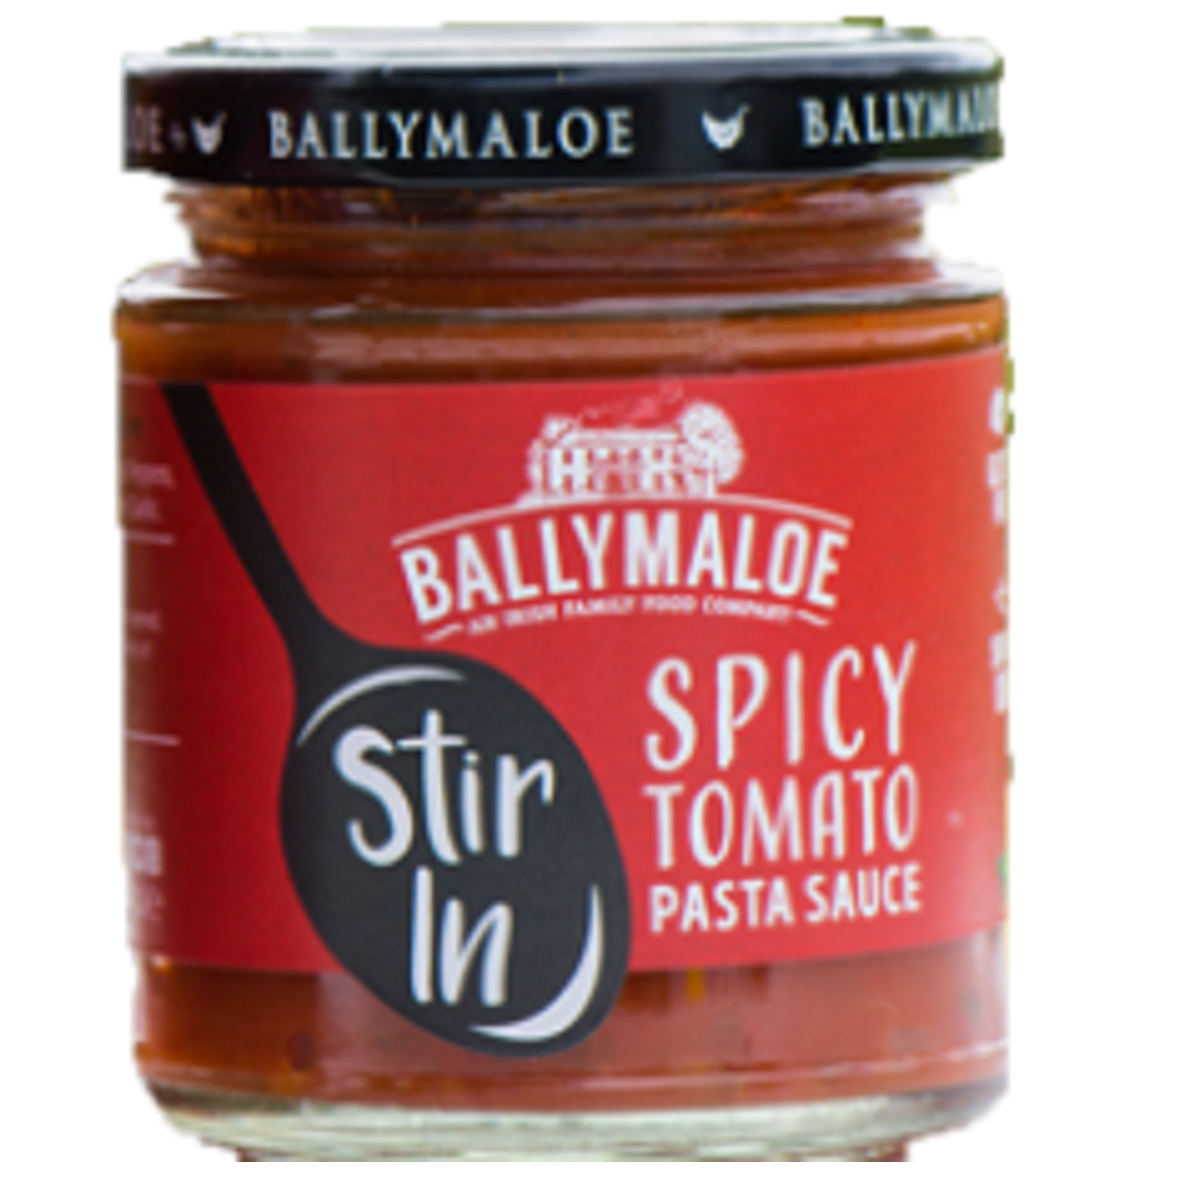 Ballymaloe Spicy Tomato Pasta Sauce 180g